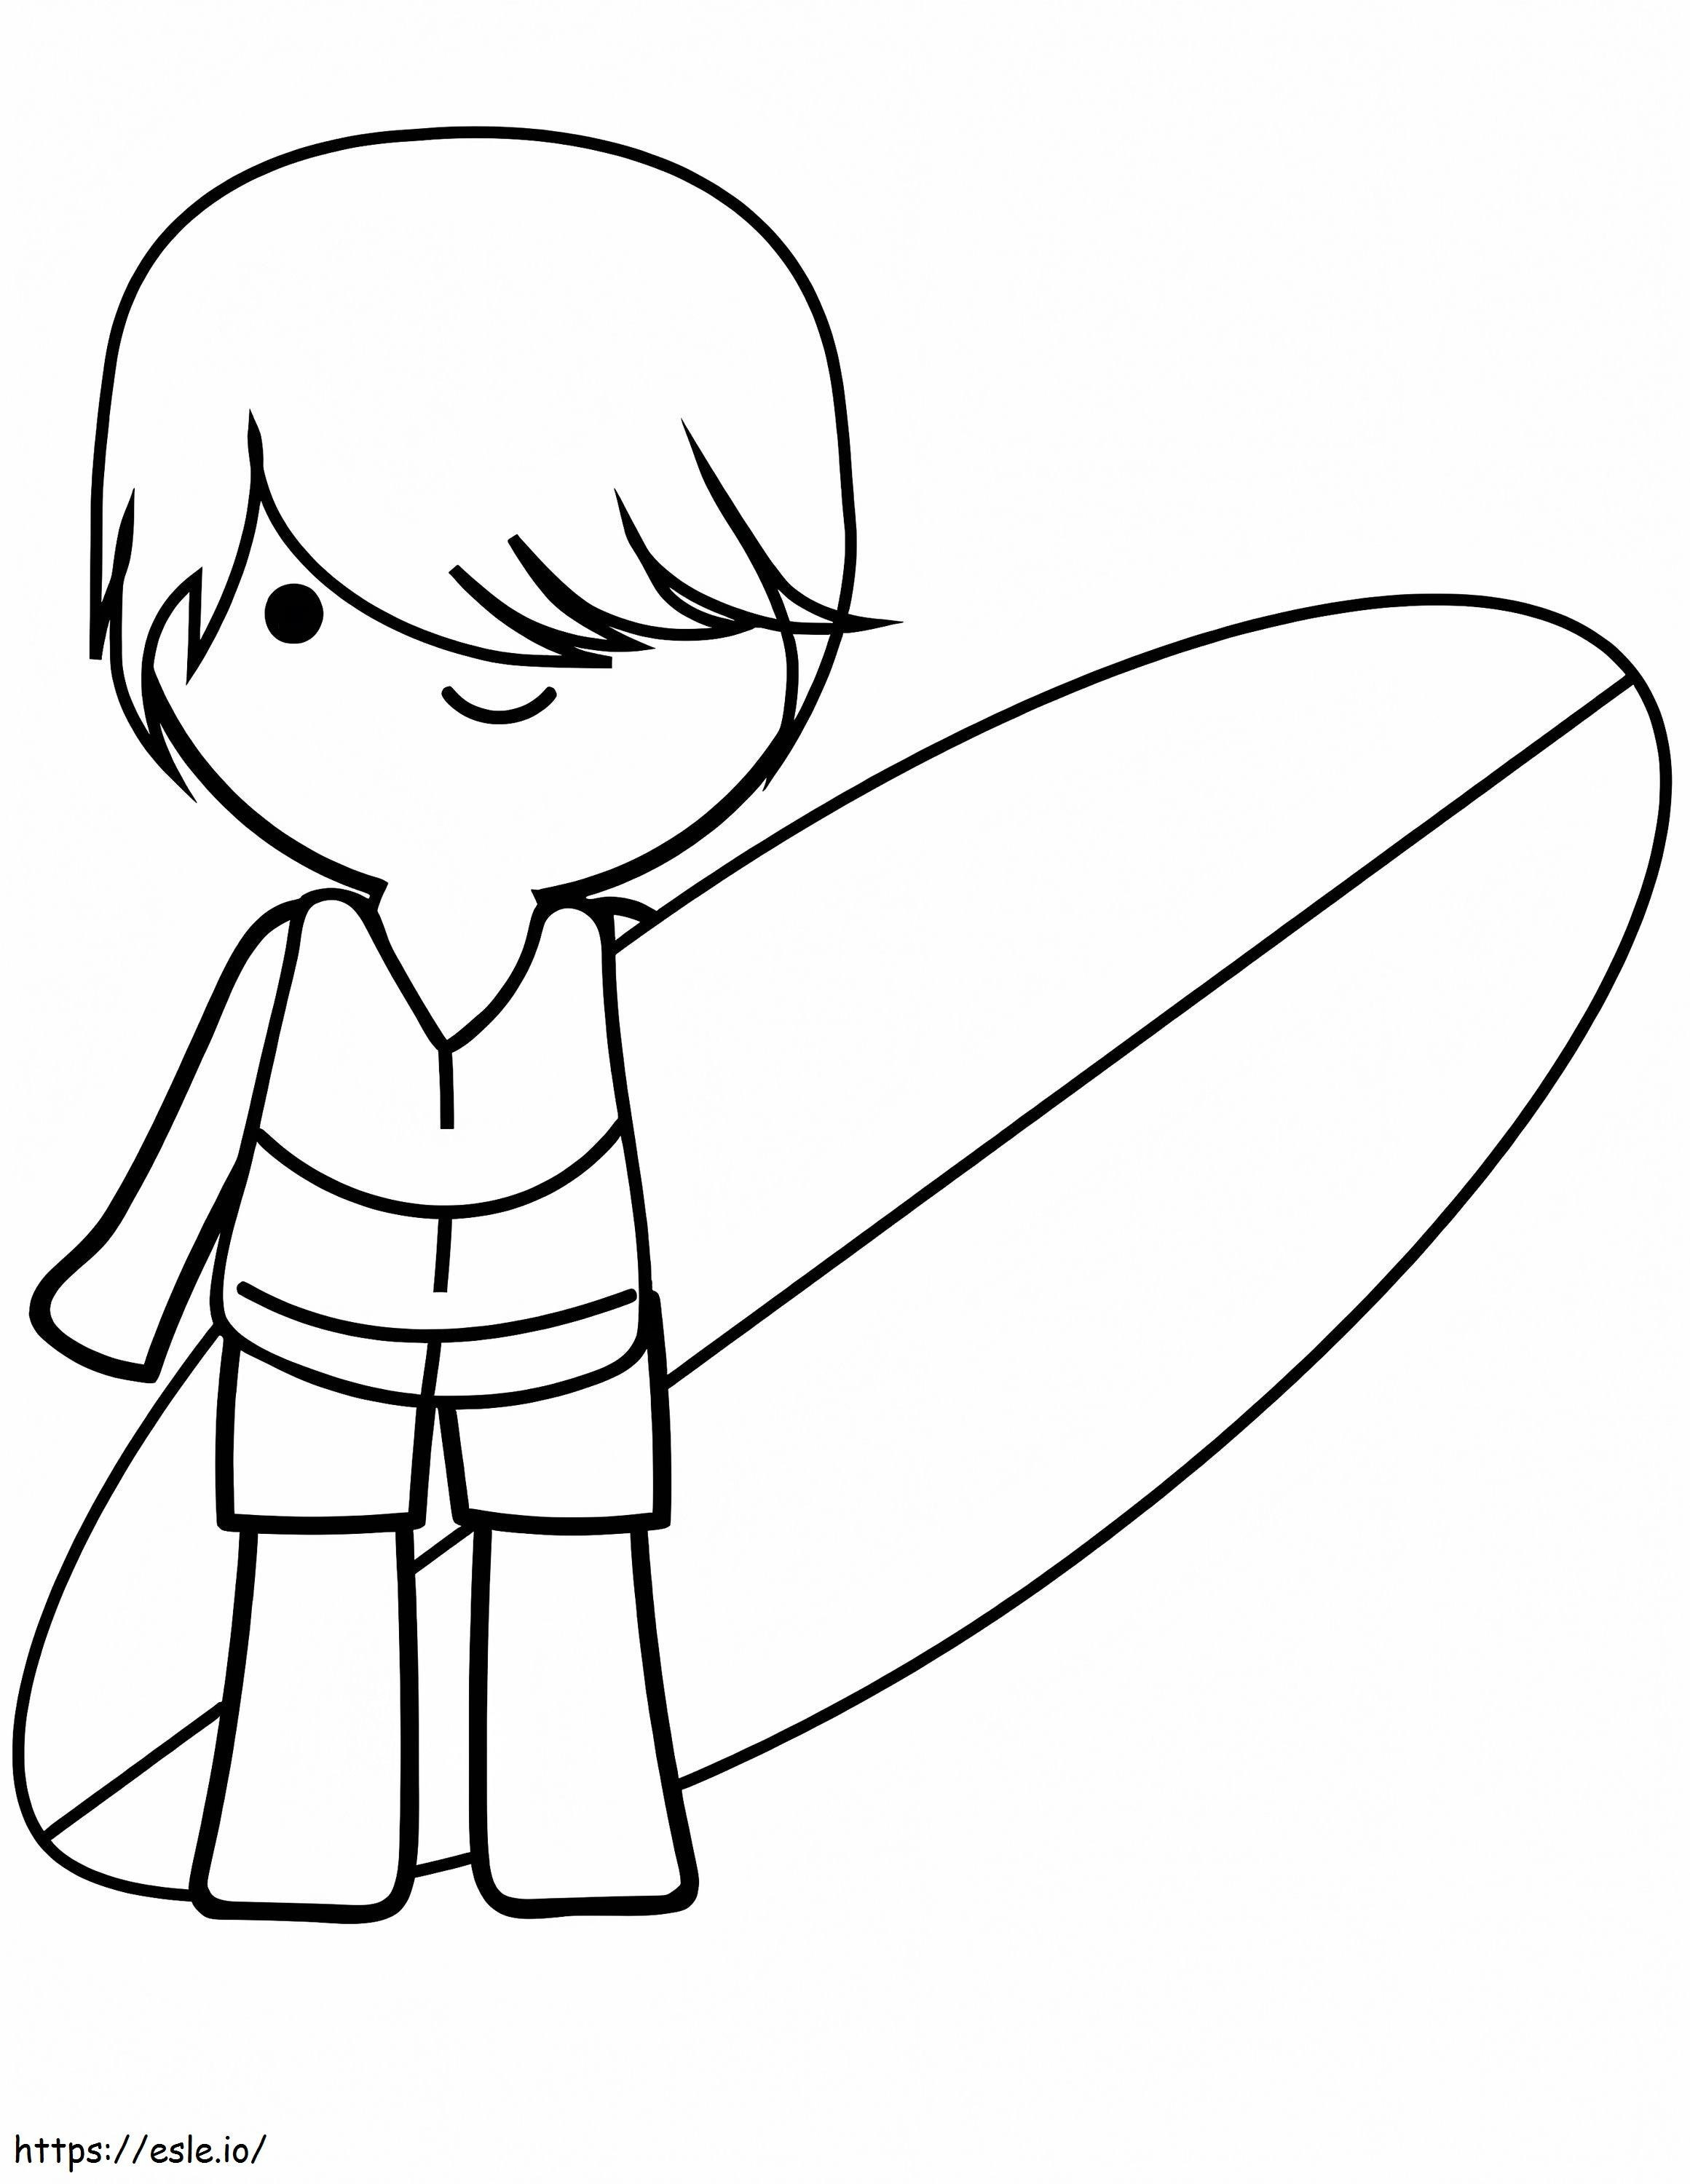 Junge mit seinem Surfbrett ausmalbilder